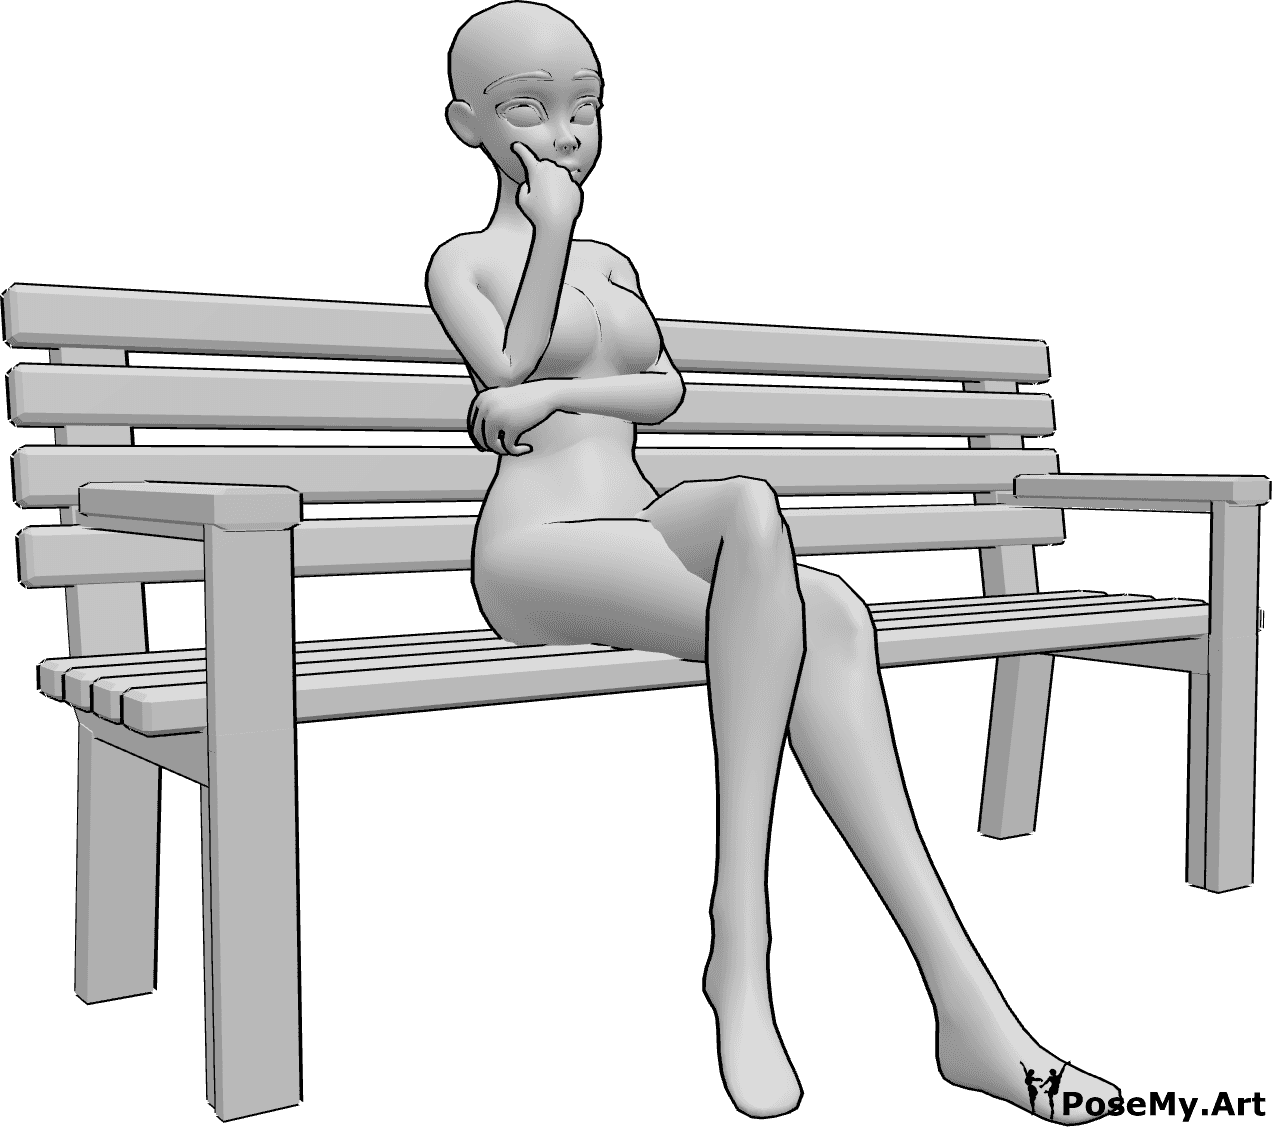 Posen-Referenz- Anime sitzende Bank Pose - Eine weibliche Anime sitzt allein auf der Bank, die Beine übereinandergeschlagen, den Blick nach vorne gerichtet, nachdenklich